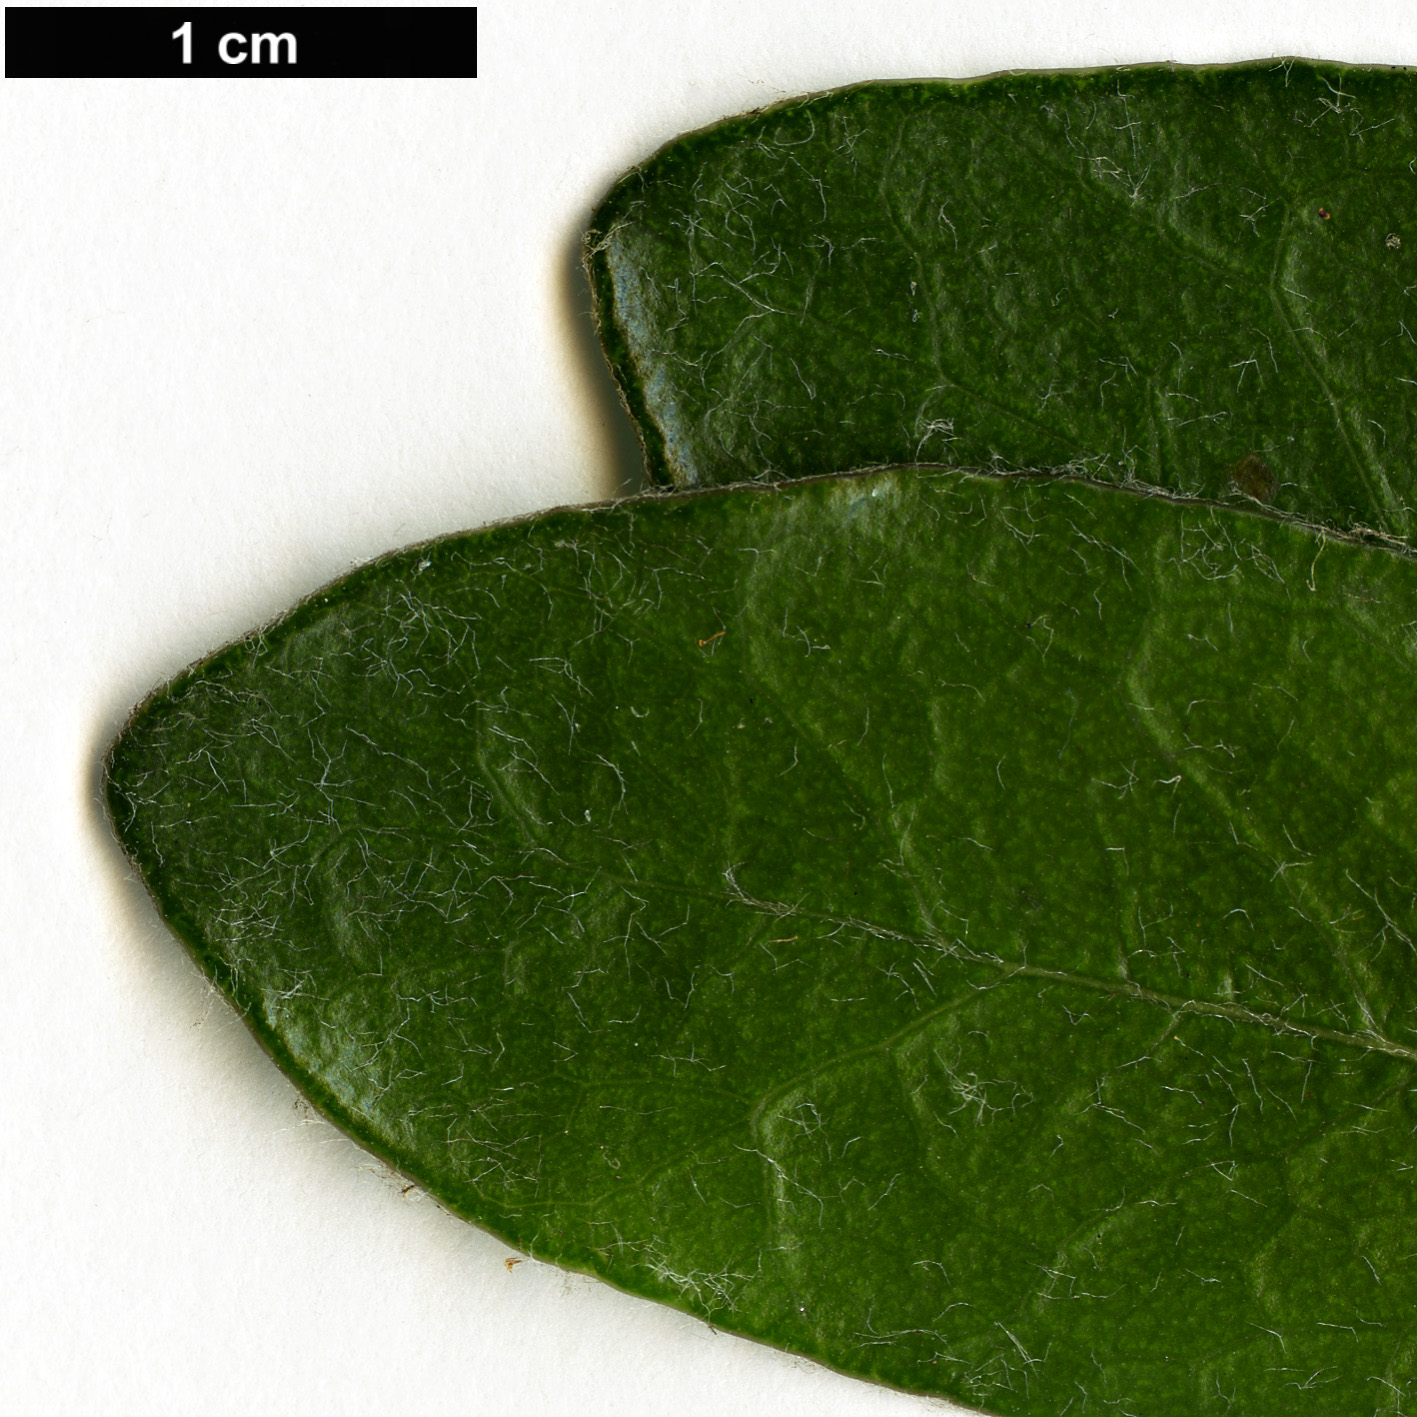 High resolution image: Family: Pittosporaceae - Genus: Pittosporum - Taxon: fairchildii